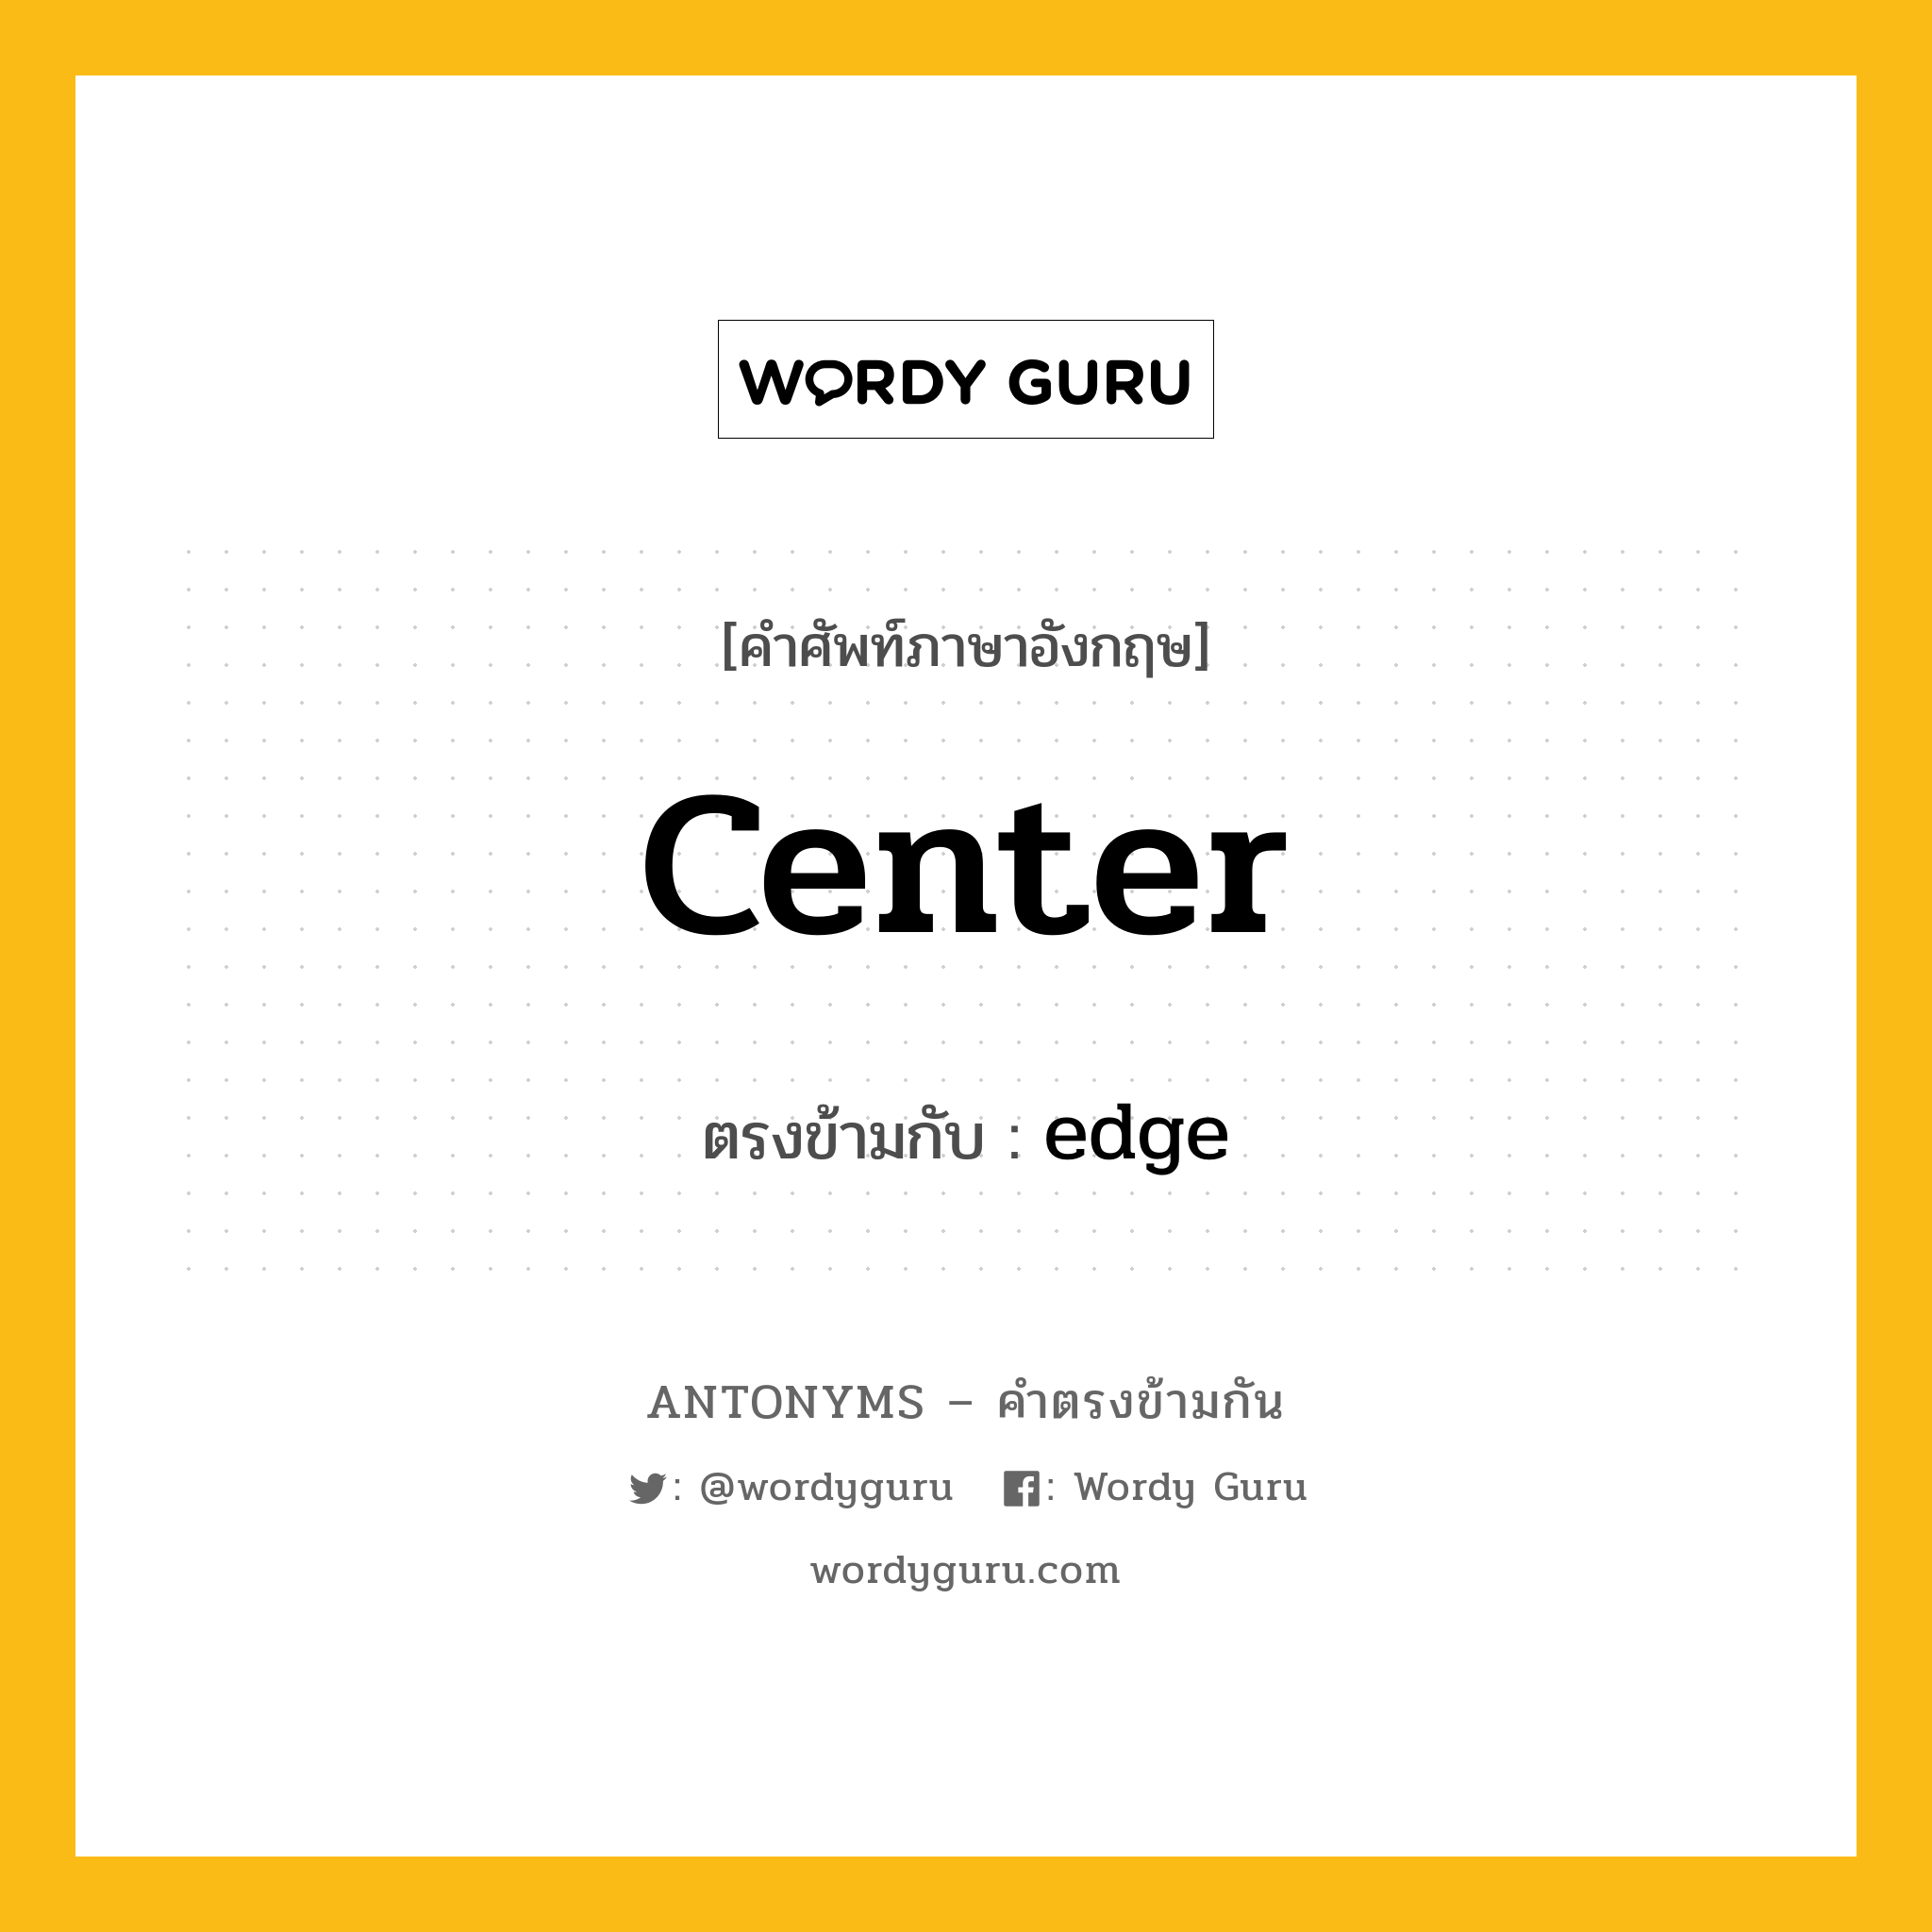 center เป็นคำตรงข้ามกับคำไหนบ้าง?, คำศัพท์ภาษาอังกฤษ center ตรงข้ามกับ edge หมวด edge